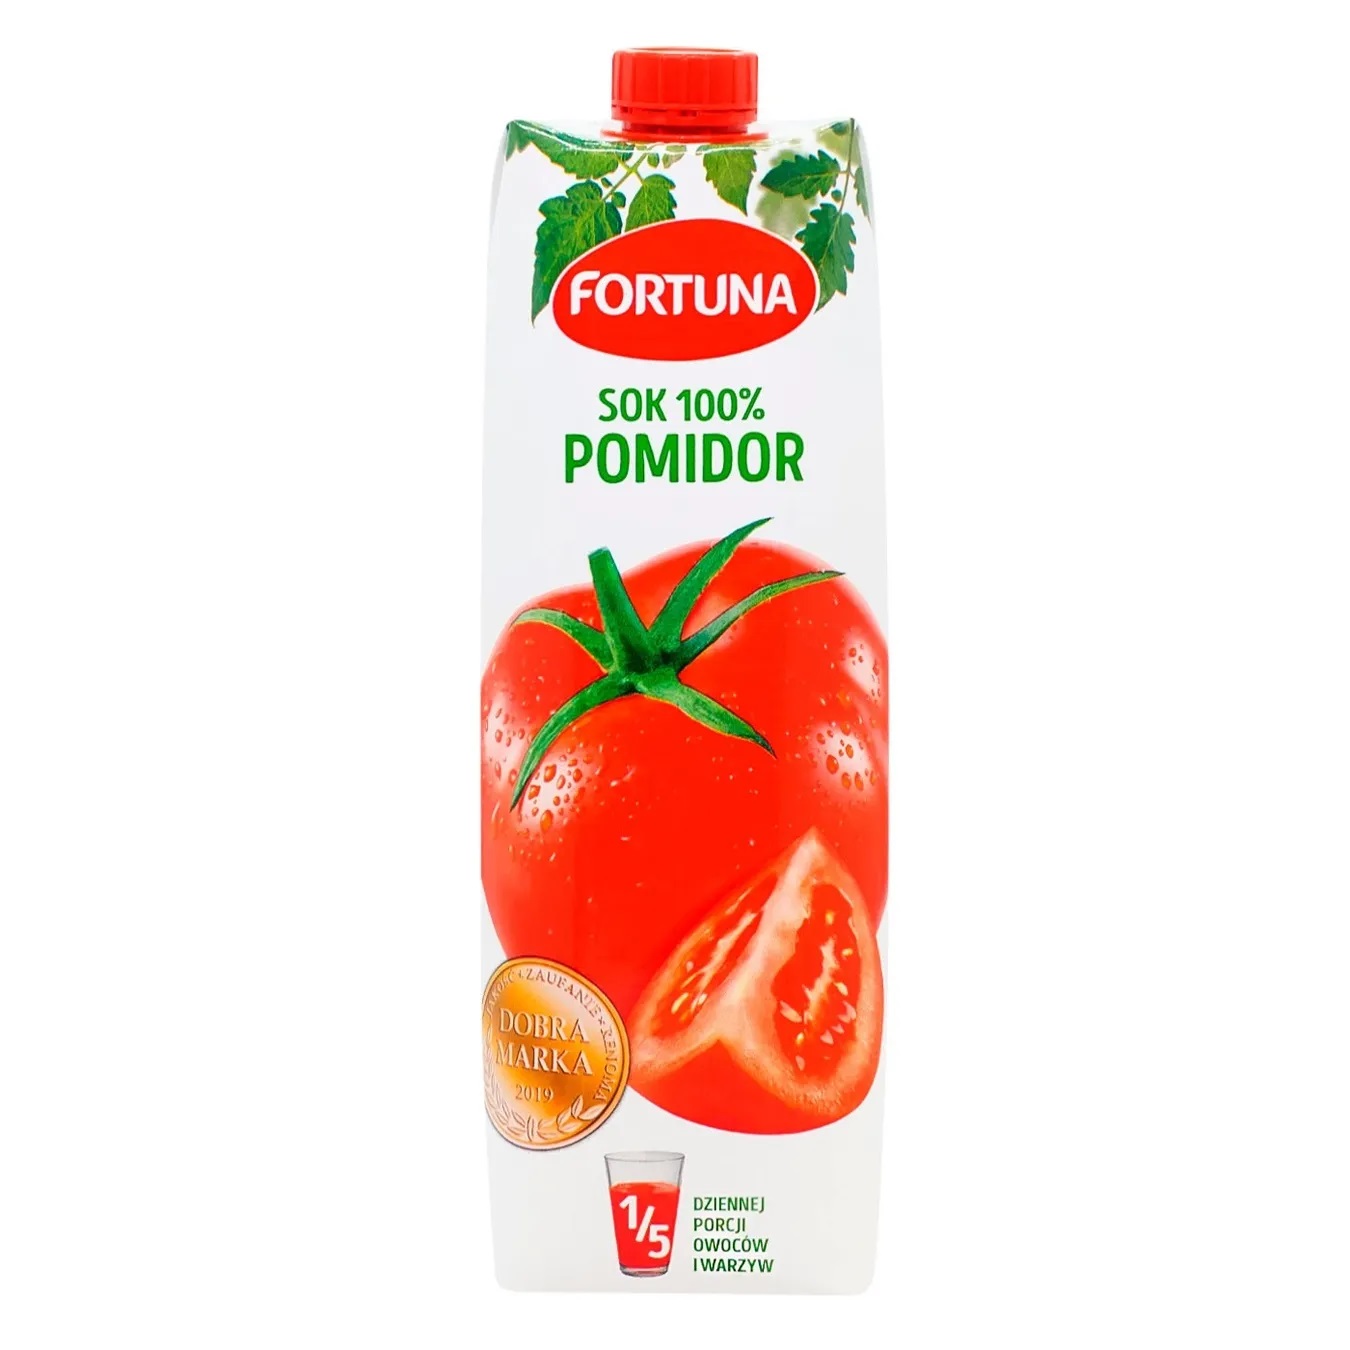 Fortuna tomato juice 1 l